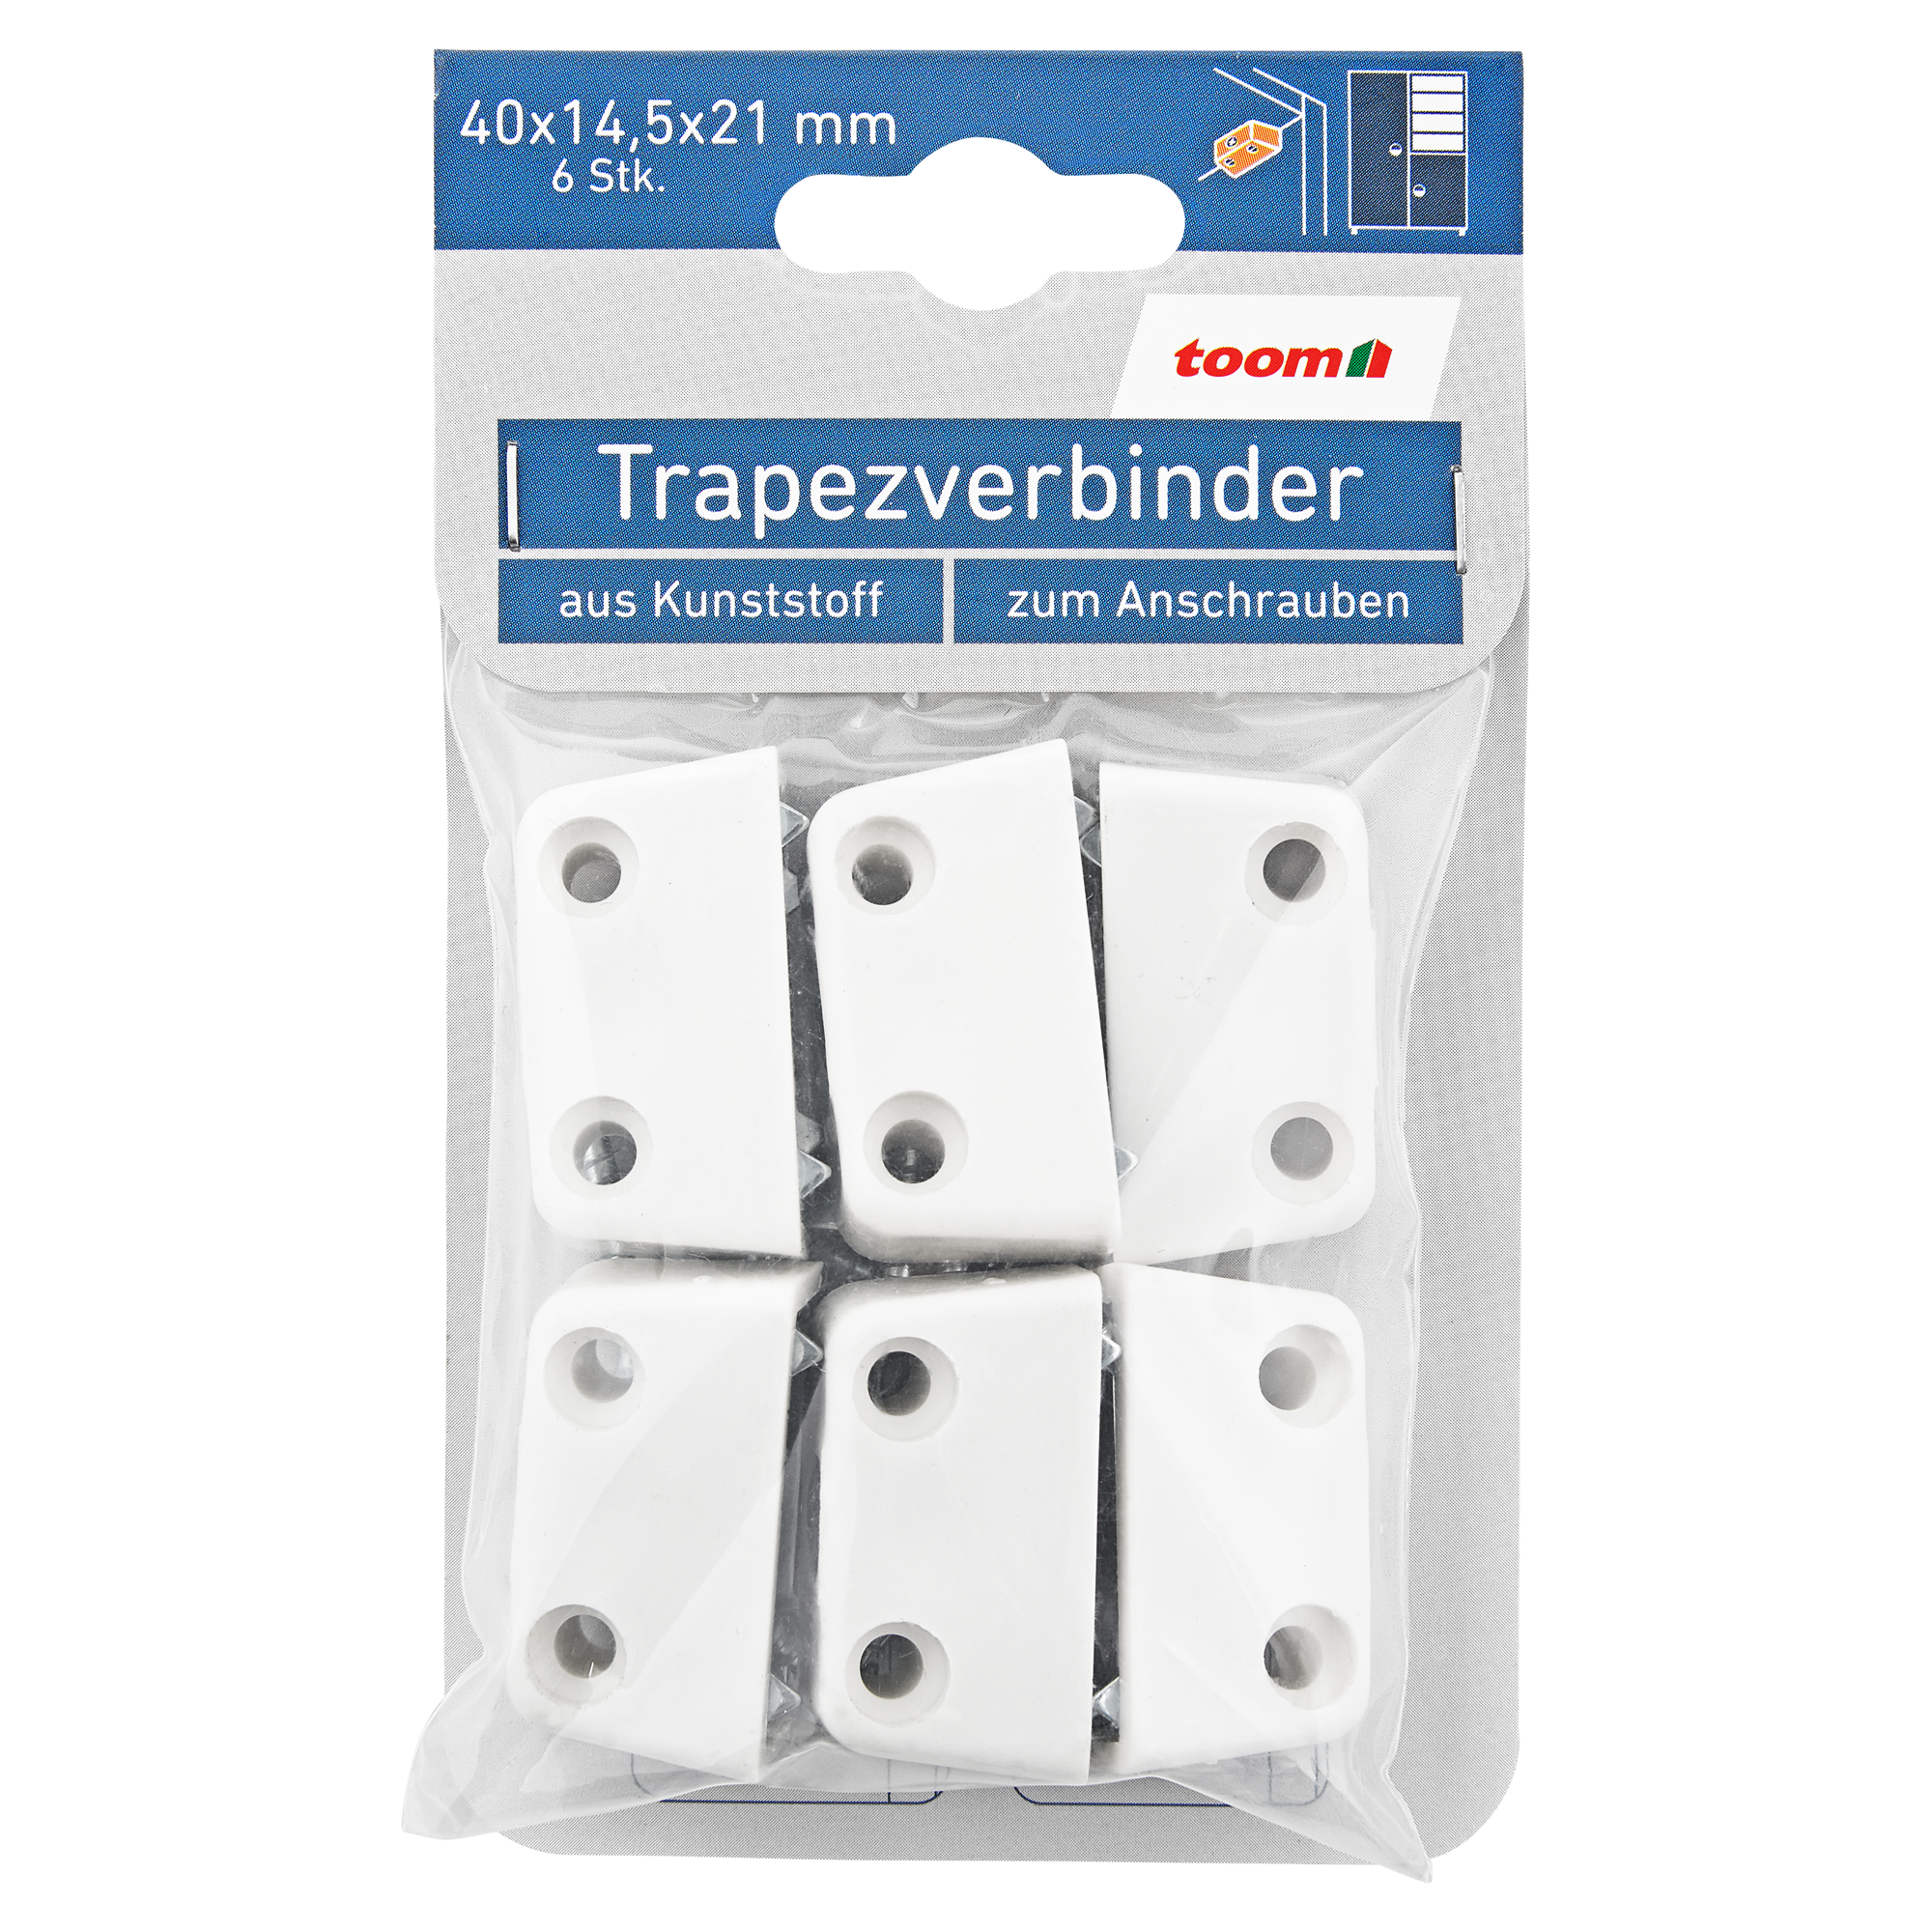 Trapezverbinder Kunststoff weiß 4 x 1,45 x 2,1 cm 6 Stück + product picture